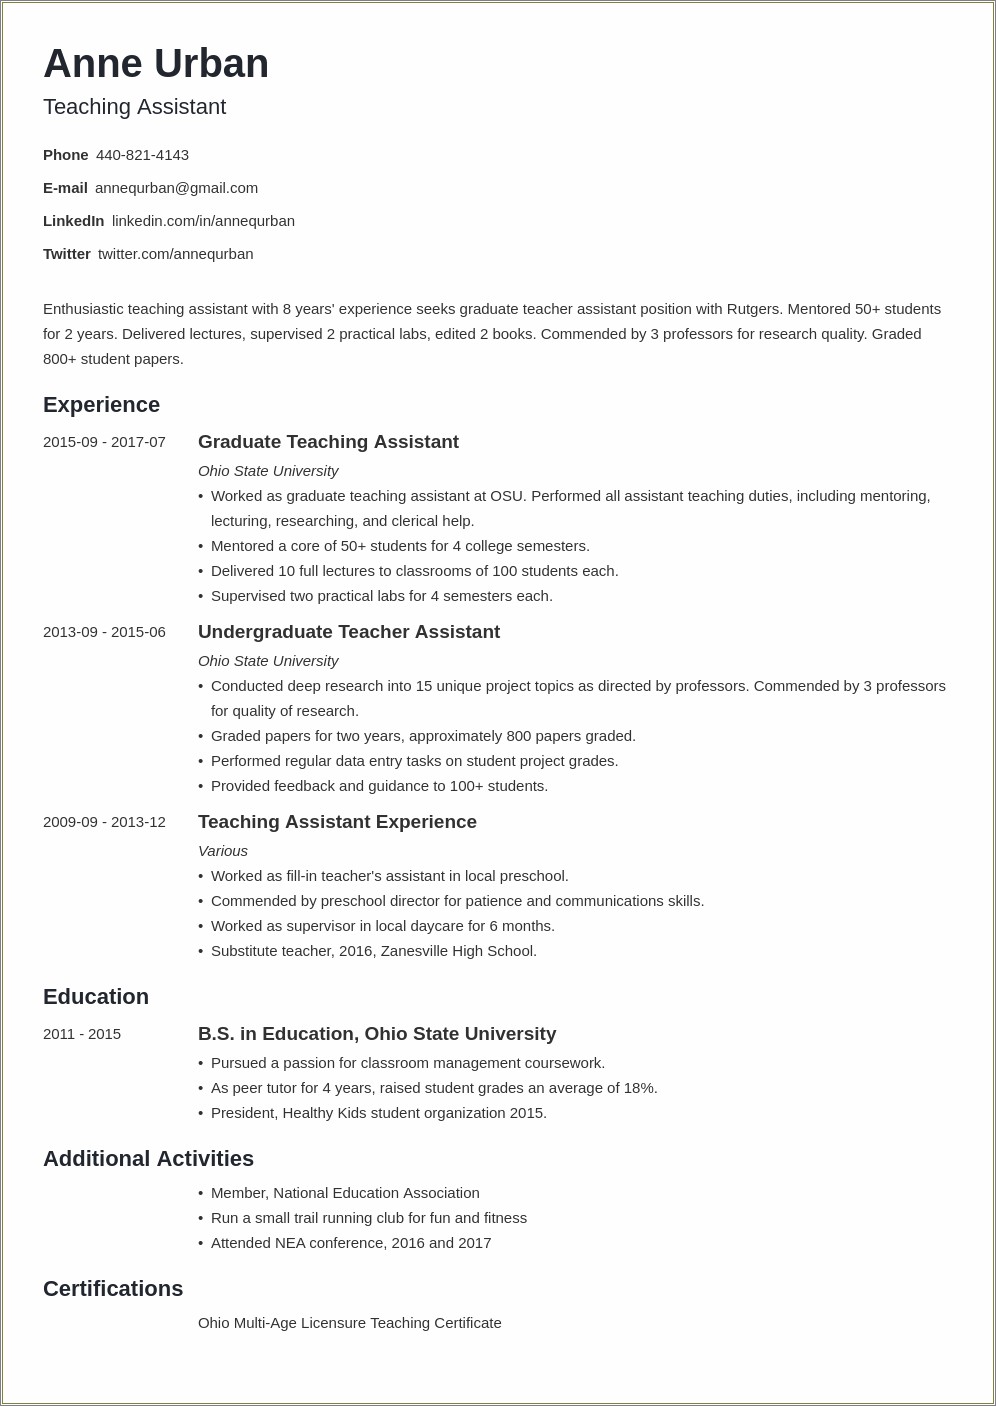 Resume Objectives For Entry Level Teachers